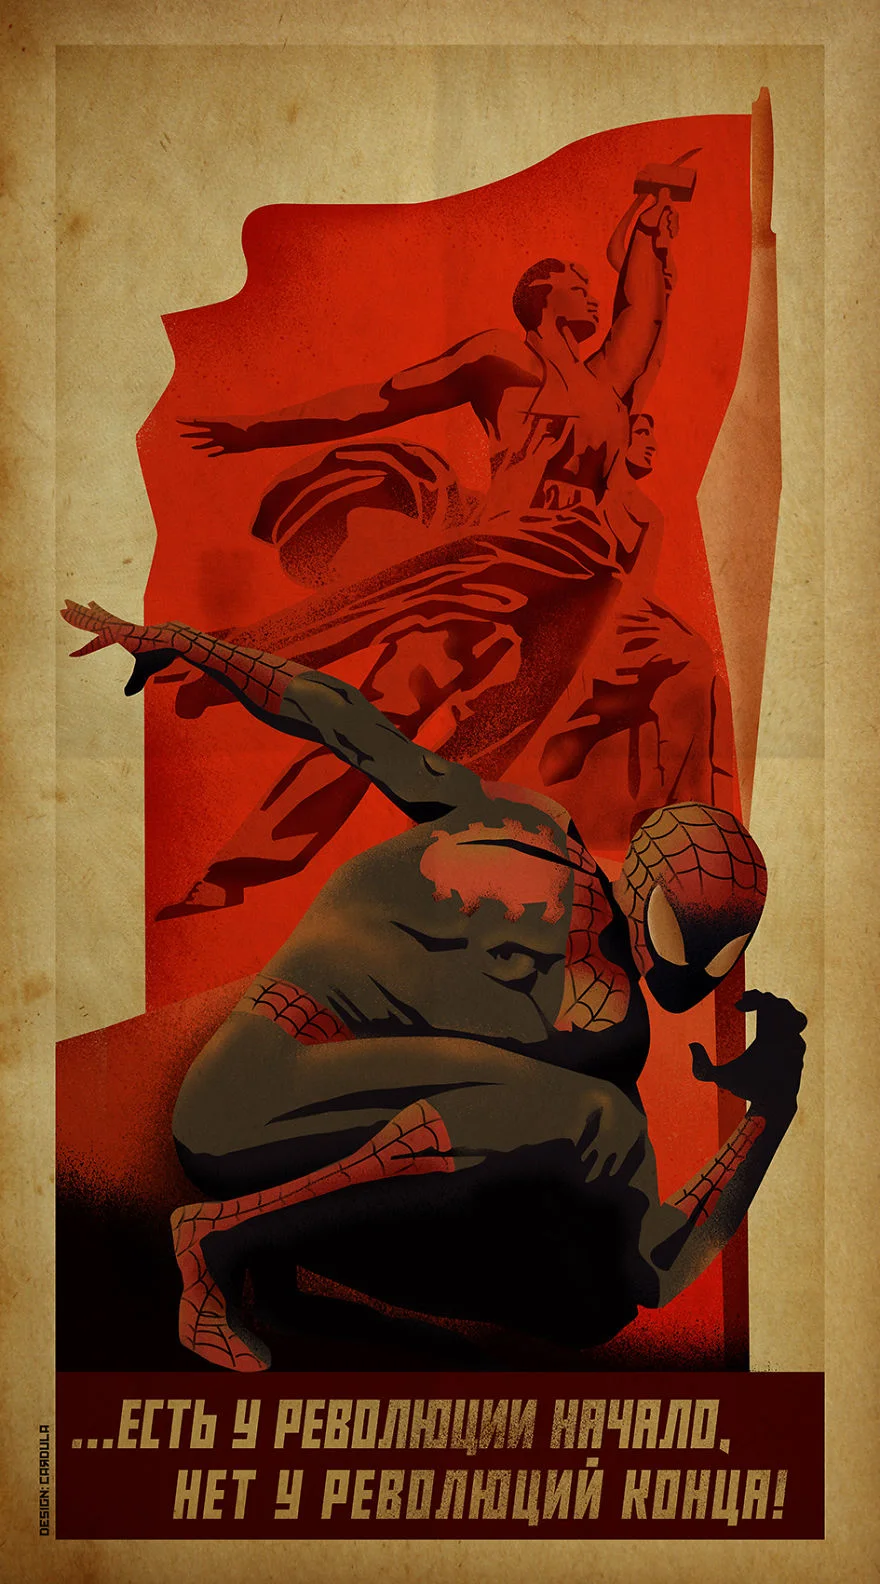 Художник изобразил супергероев DC и Marvel в стиле плакатов CCСР. Получилось невероятно круто! - фото 1